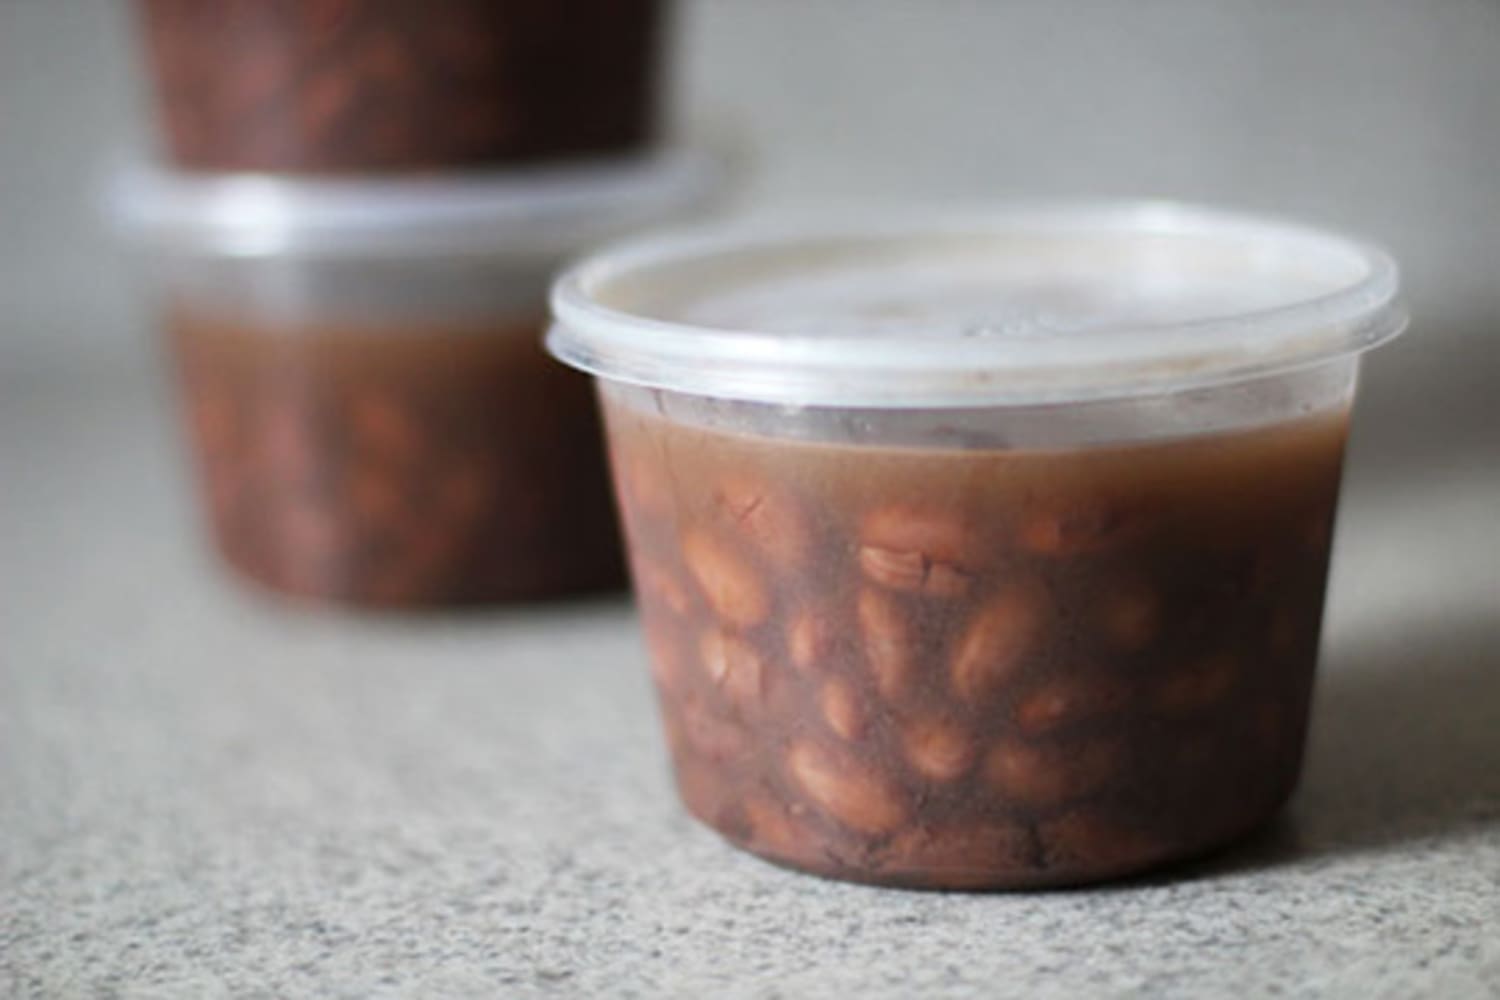 Cheap, Convenient & Better Than Canned: Freezer Beans